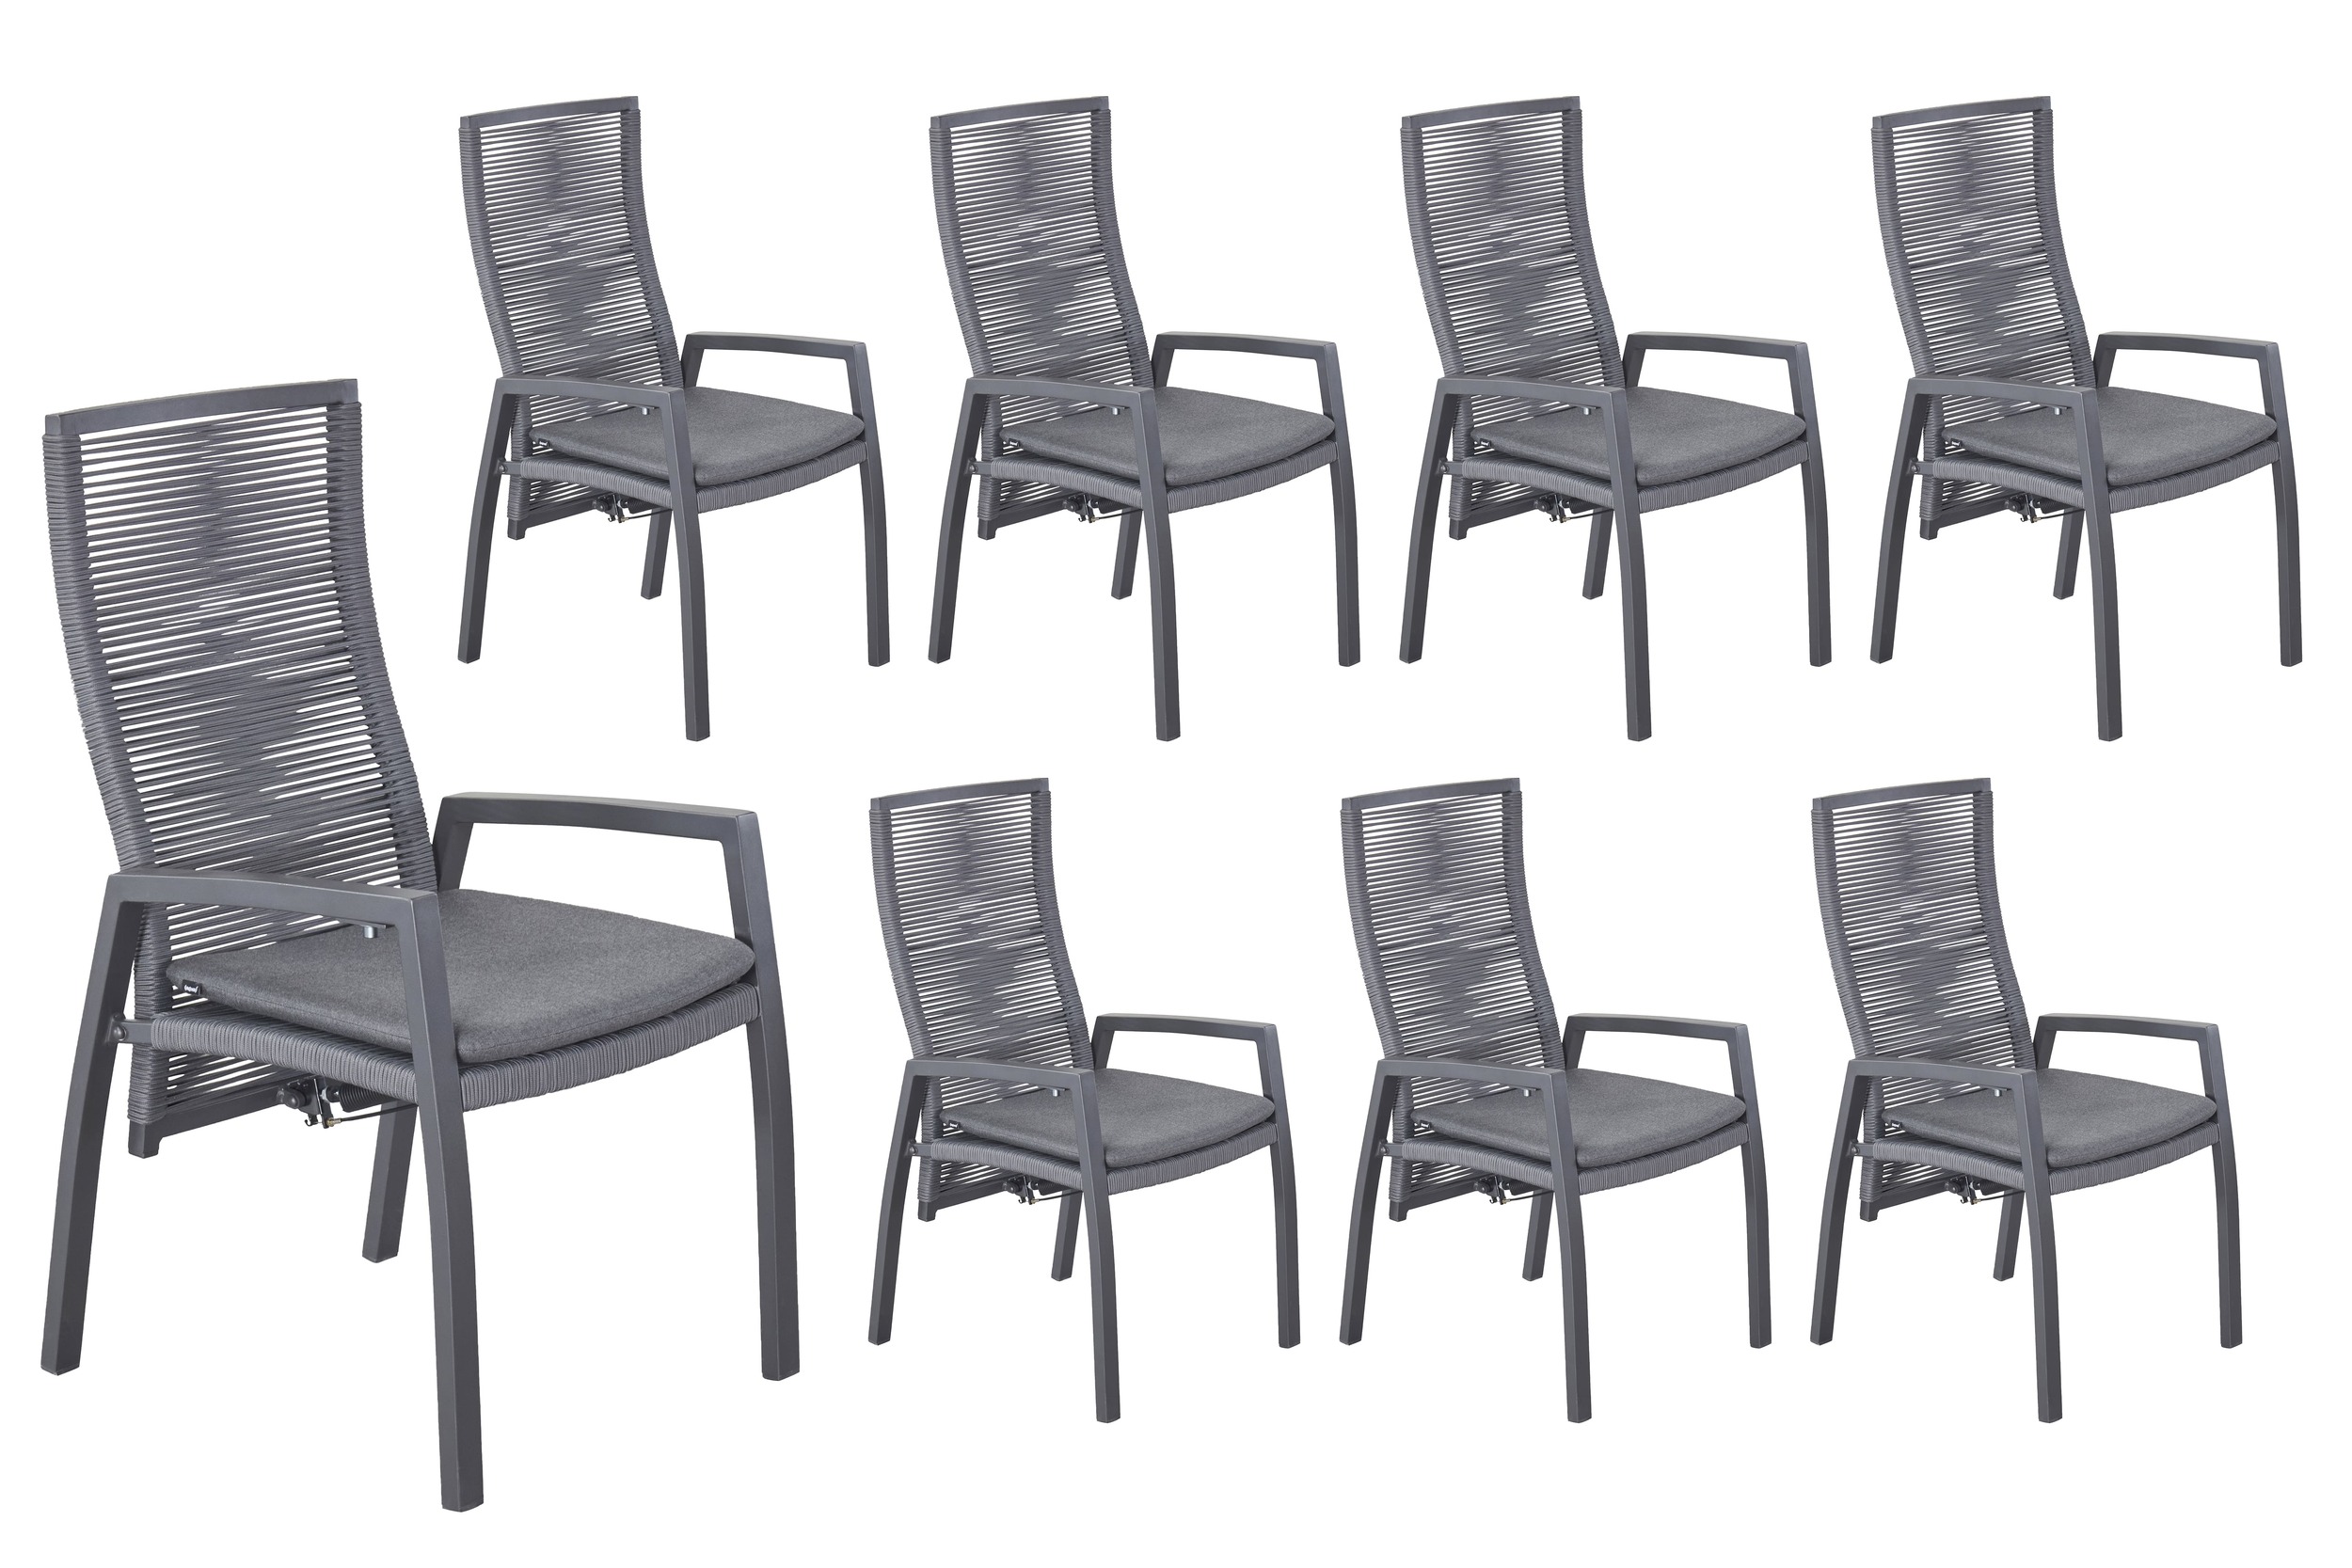 LC Garden 8er Set »Diwo« Gartenstuhl anthrazit/grau Aluminium/Rope Positionsstuhl mit Sitzkissen aus Sunbrella® Stoff